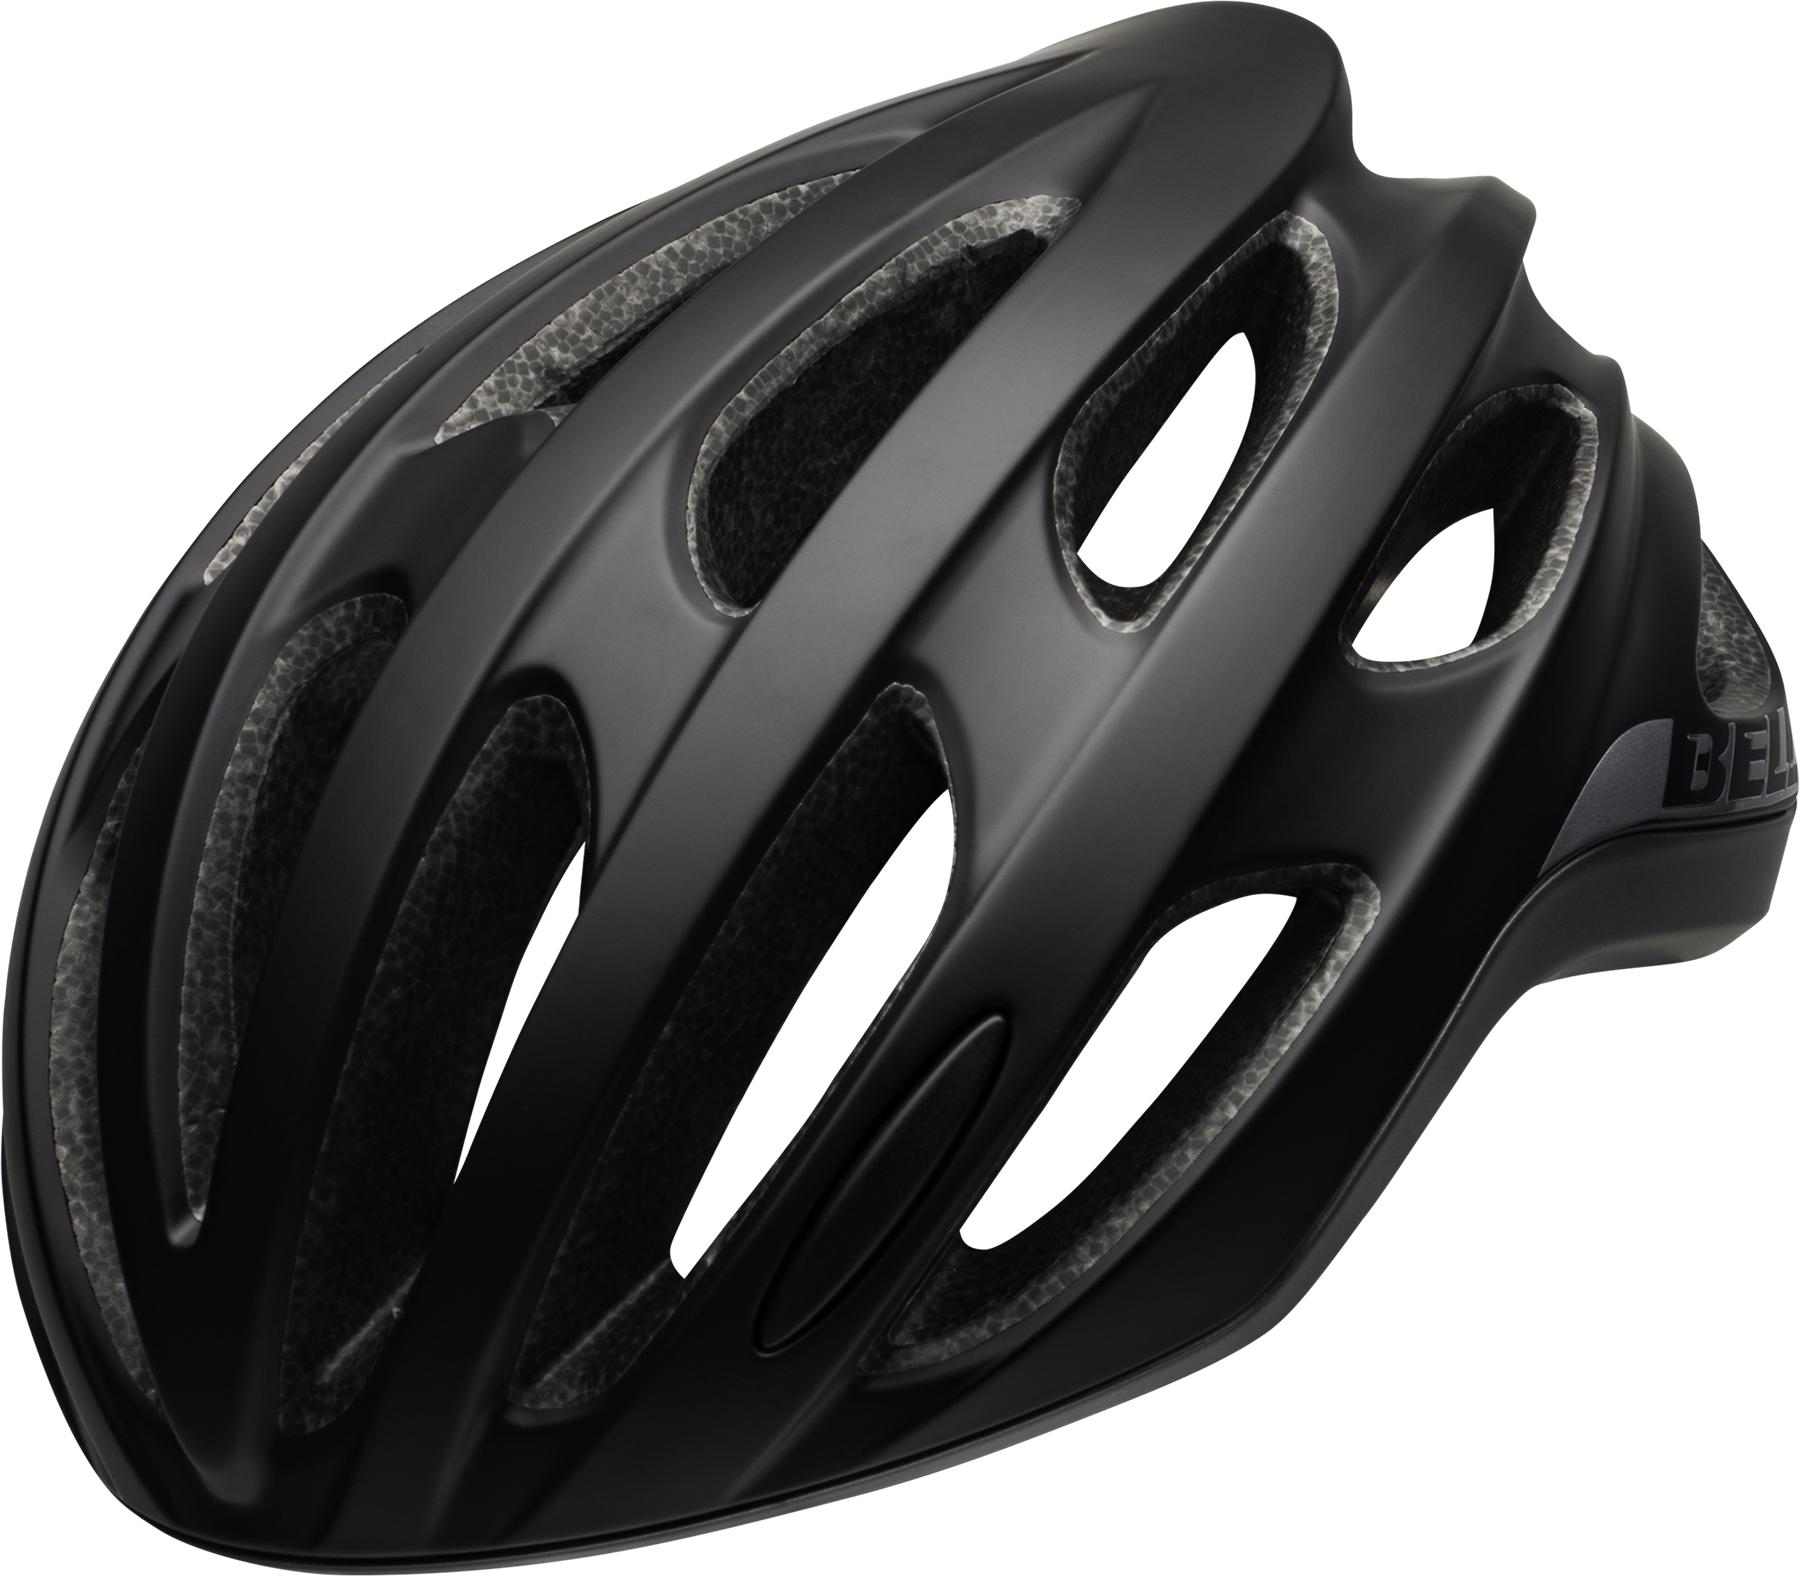 Bell Formula Road Helmet (mips) - Black/grey